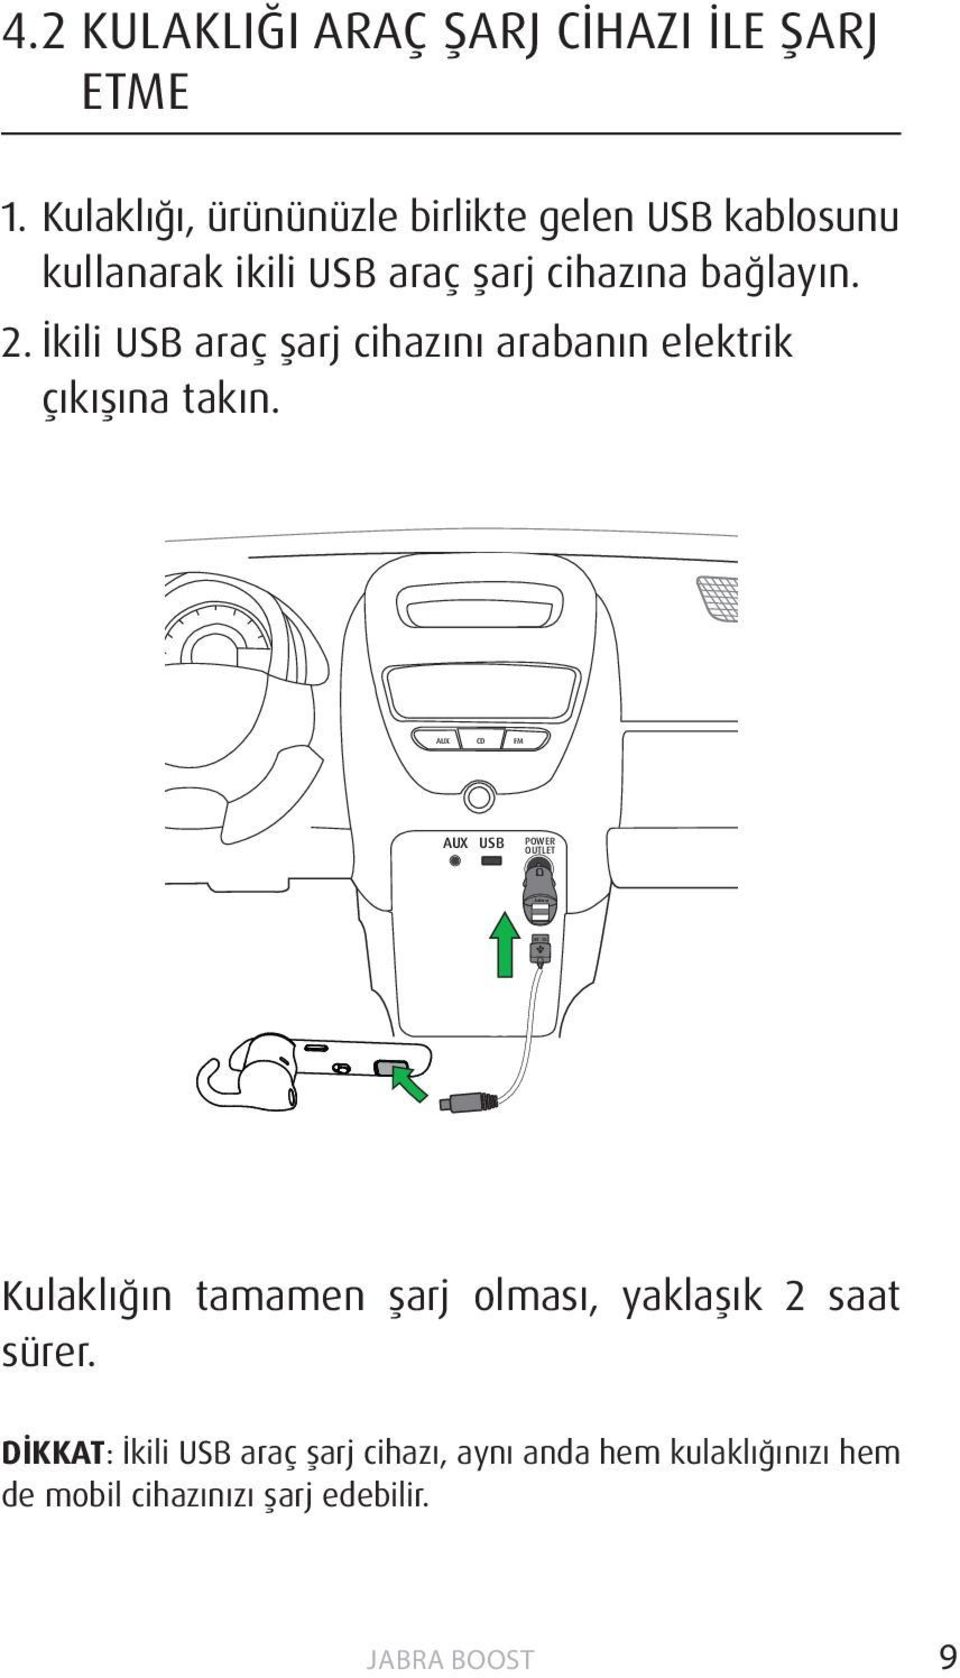 İkili USB araç şarj cihazını arabanın elektrik çıkışına takın.